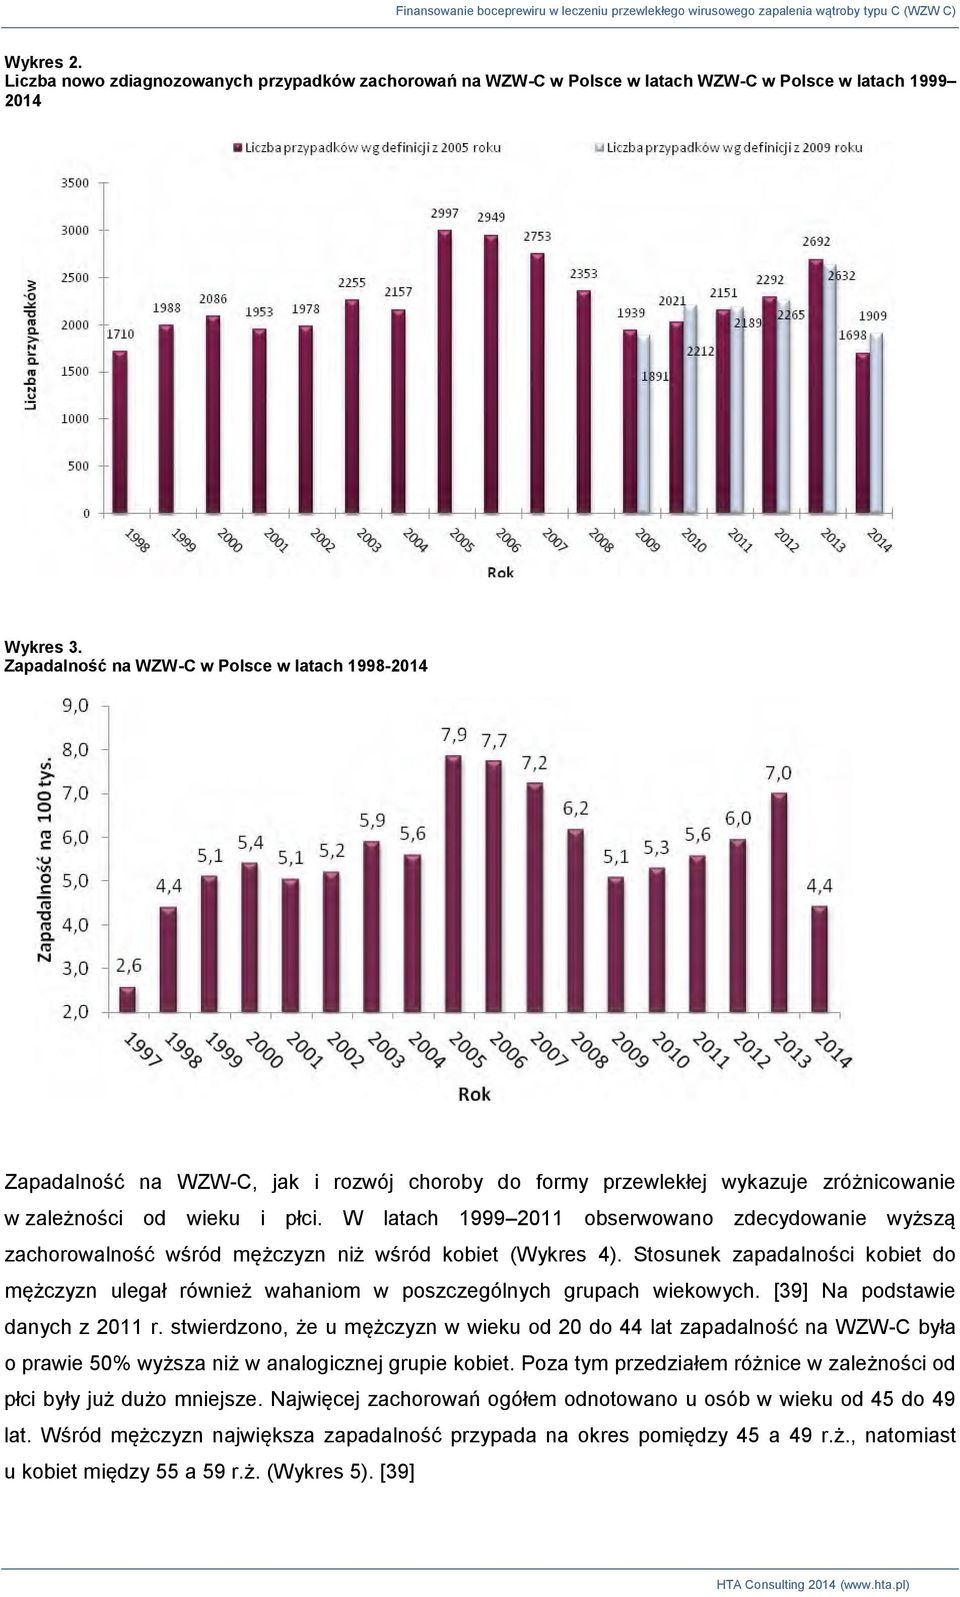 W latach 1999 2011 obserwowano zdecydowanie wyższą zachorowalność wśród mężczyzn niż wśród kobiet (Wykres 4).